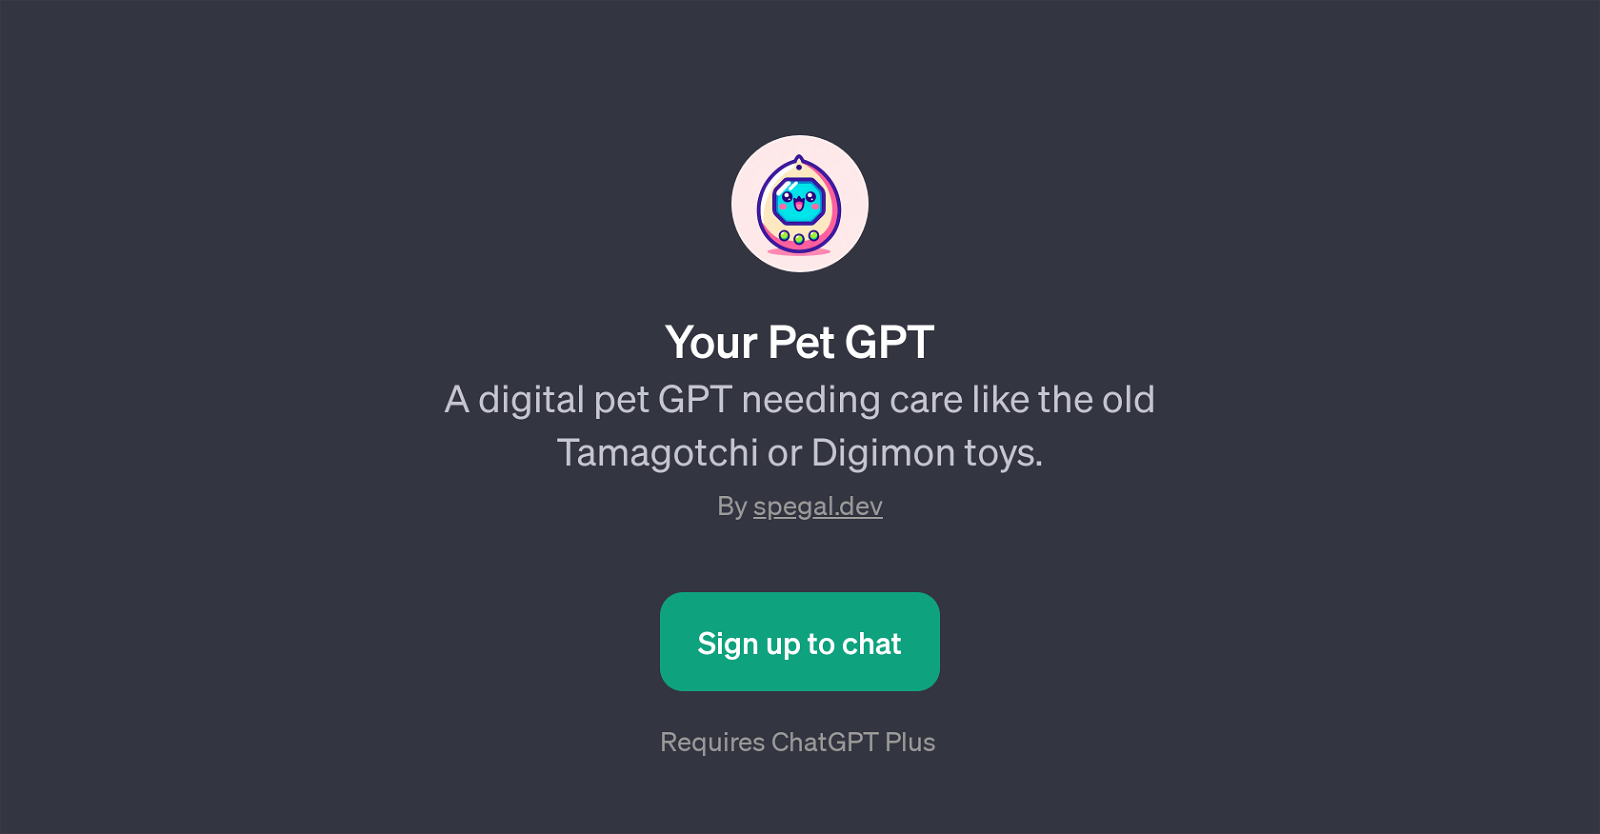 Your Pet GPT website